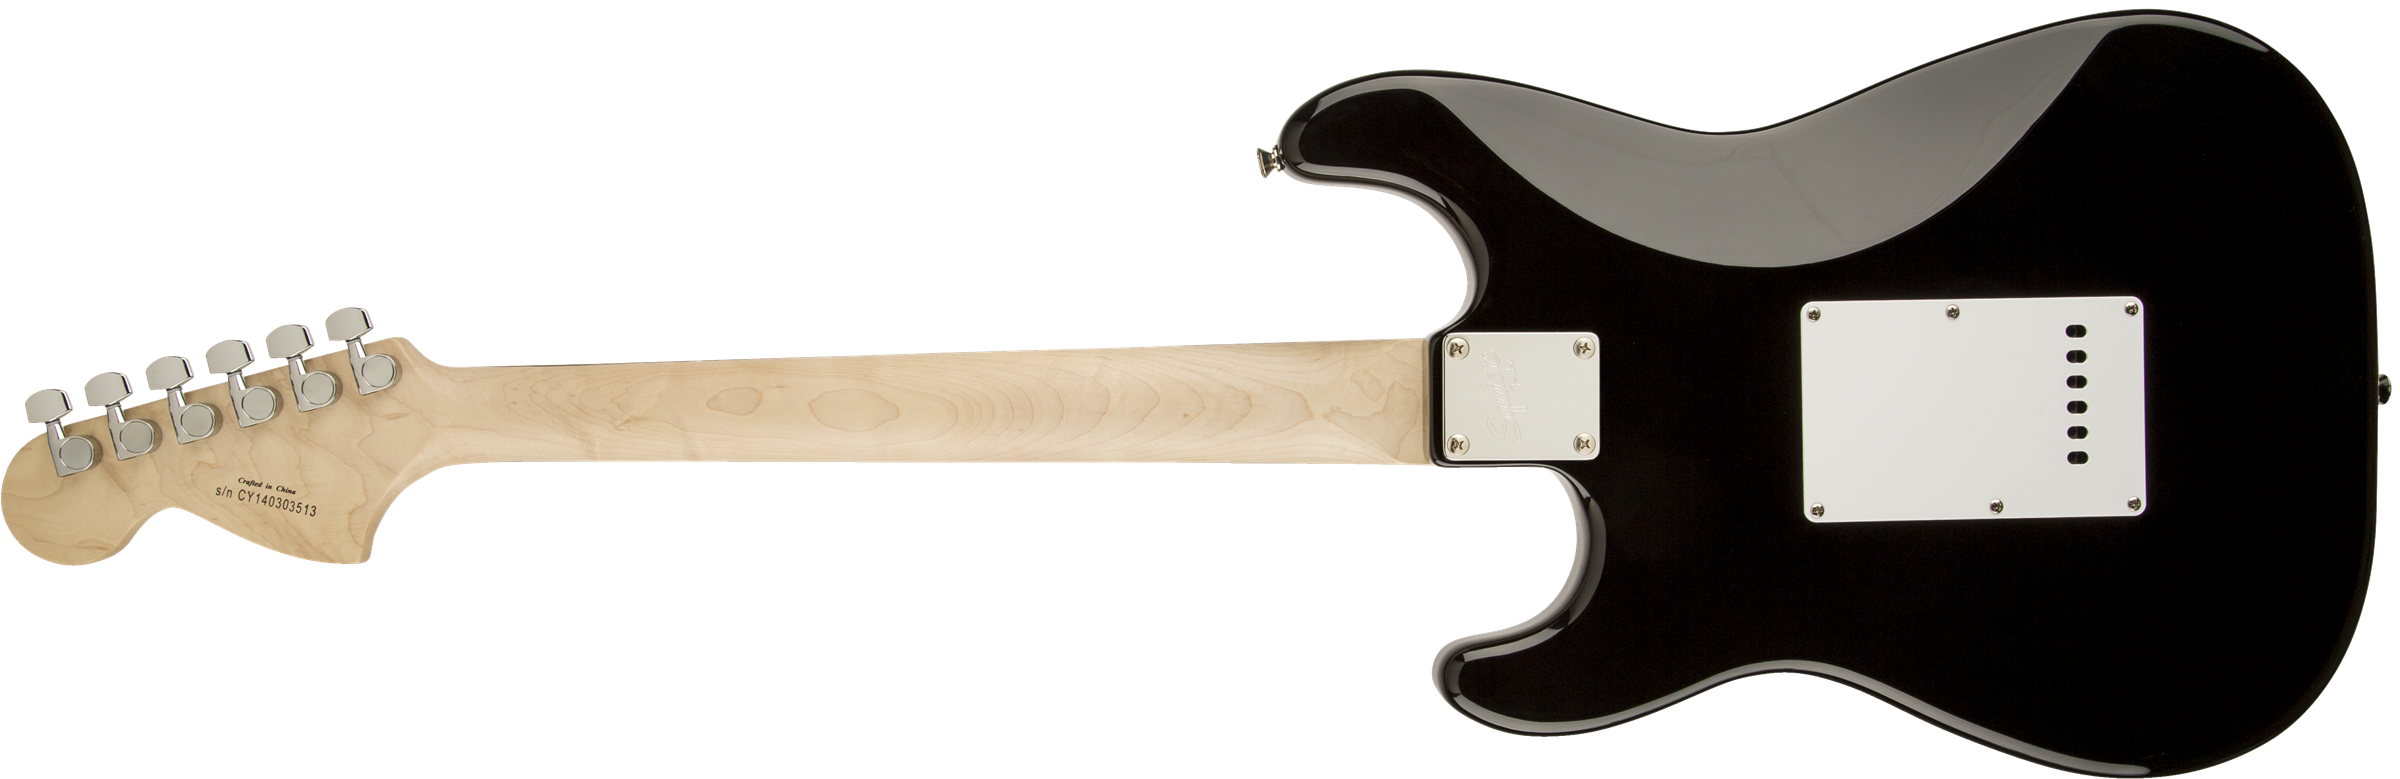 Squier Strat Affinity Series 3s Rw - Black - Guitarra eléctrica con forma de str. - Variation 6